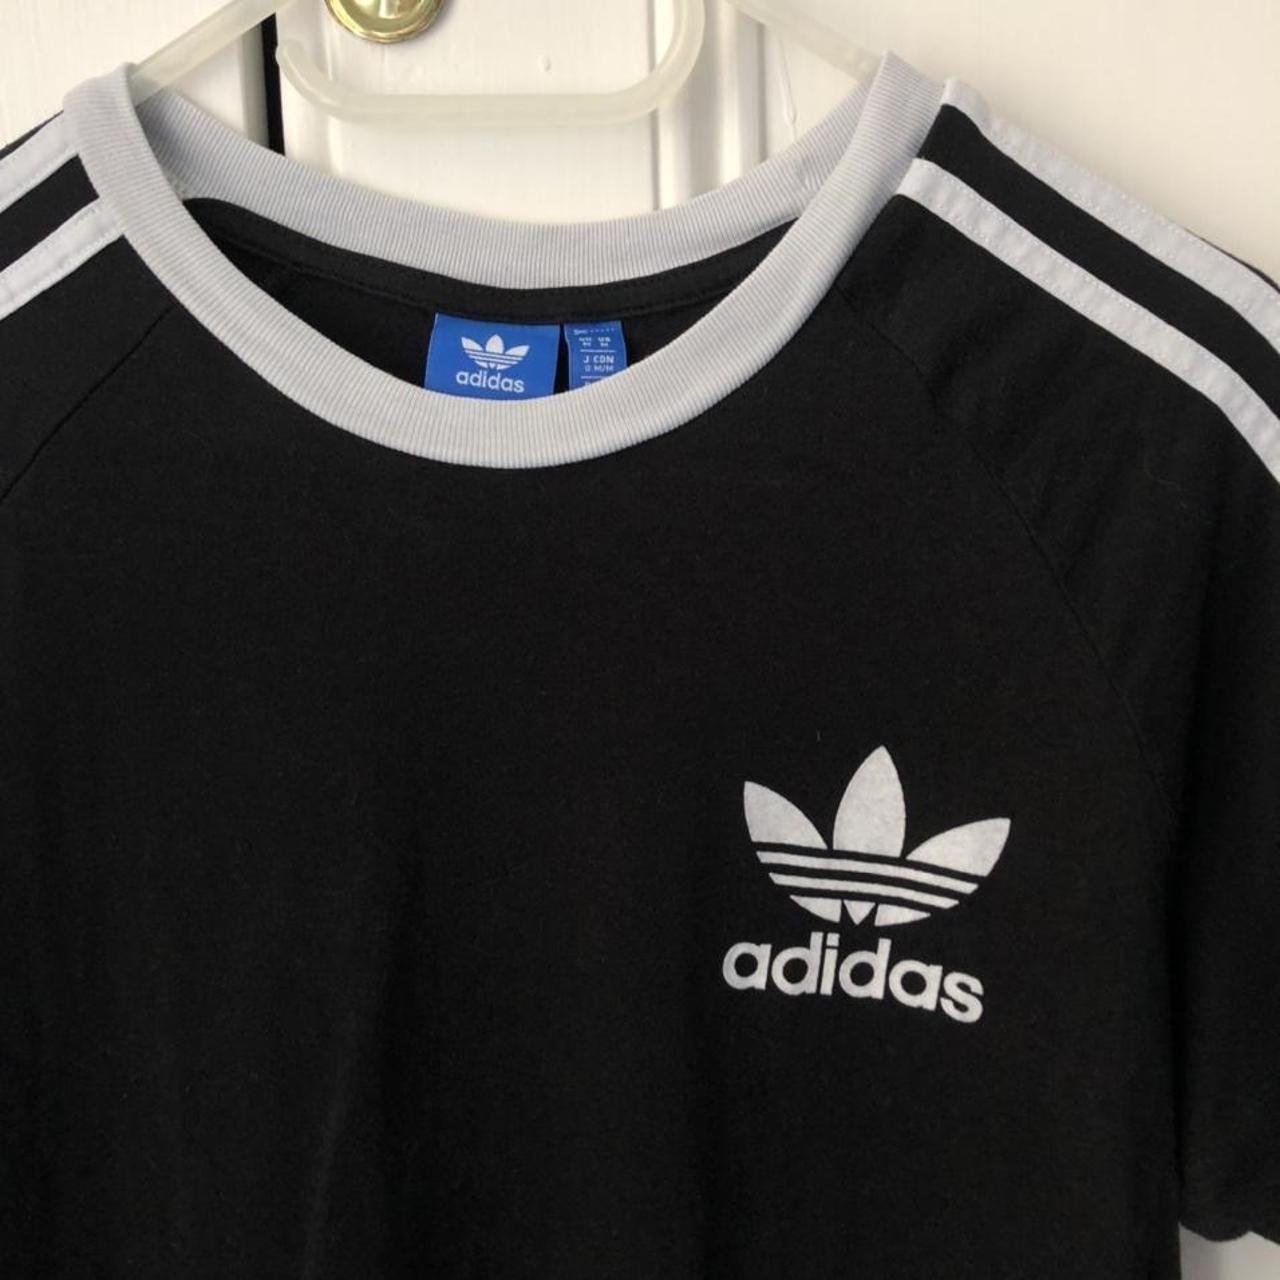 Adidas originals black and white striped t-shirt... - Depop